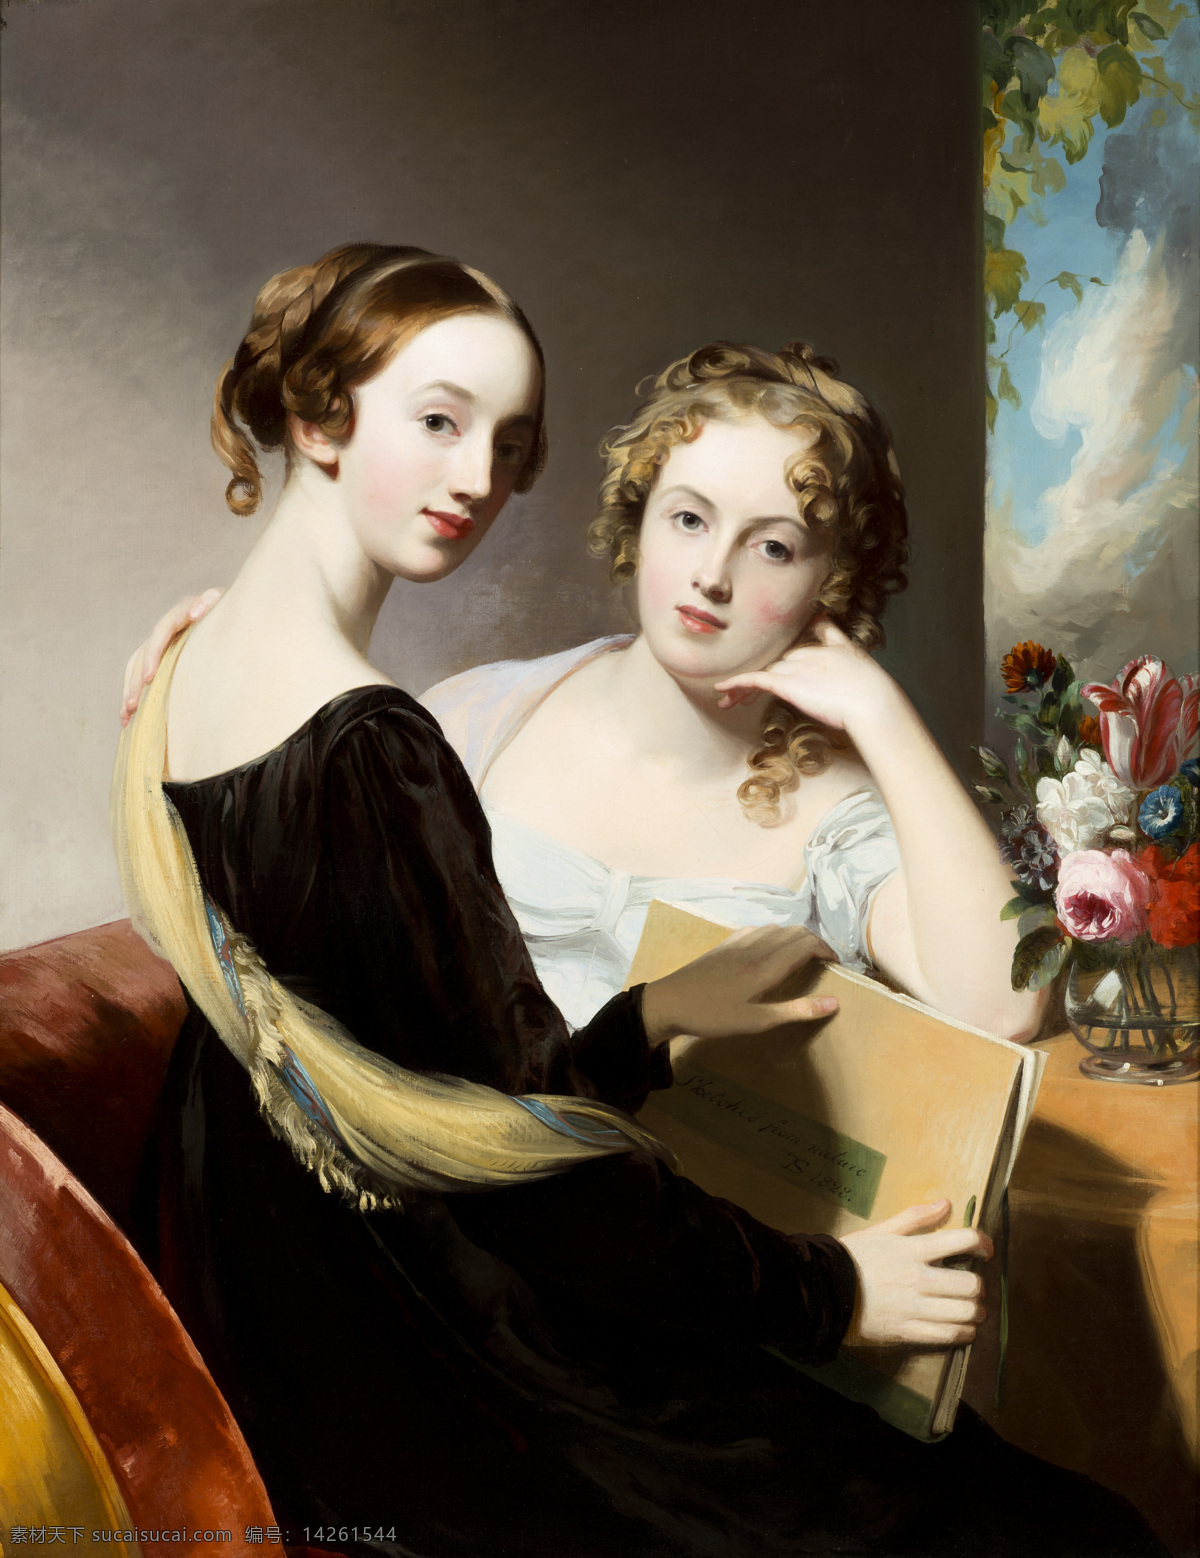 托马斯 萨利作品 英国画家 姐妹俩 玛丽 艾米莉娅 贵族之家 19世纪油画 油画 文化艺术 绘画书法